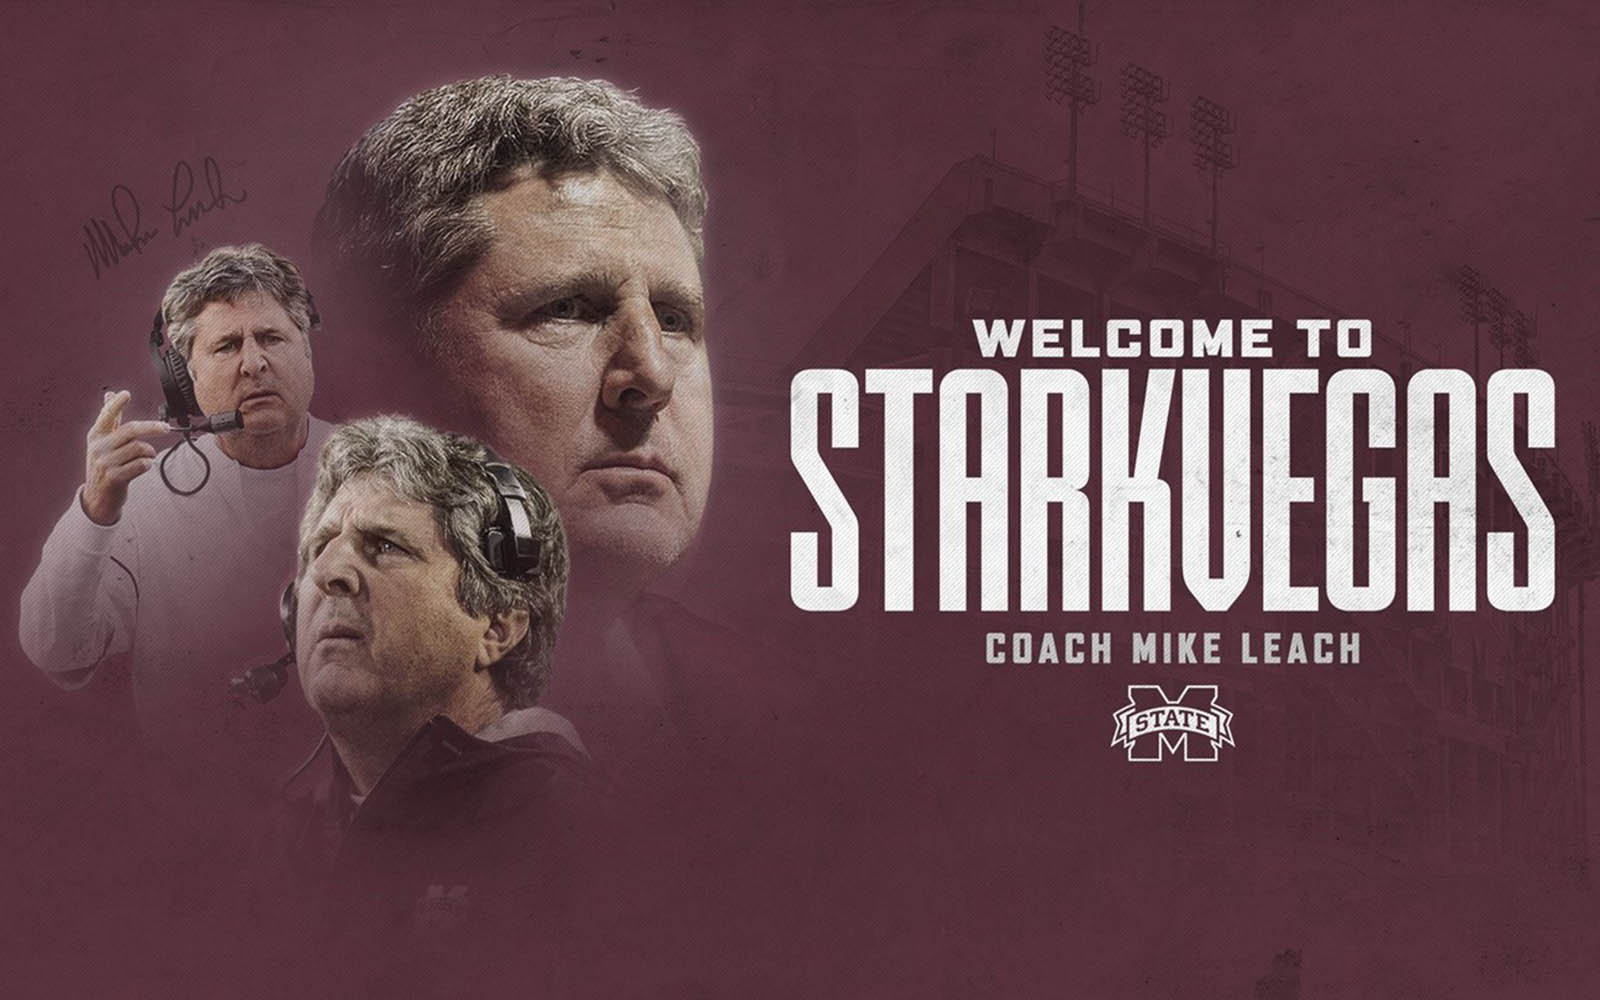 A graphic announcing Mike Leach as MSU's new football coach